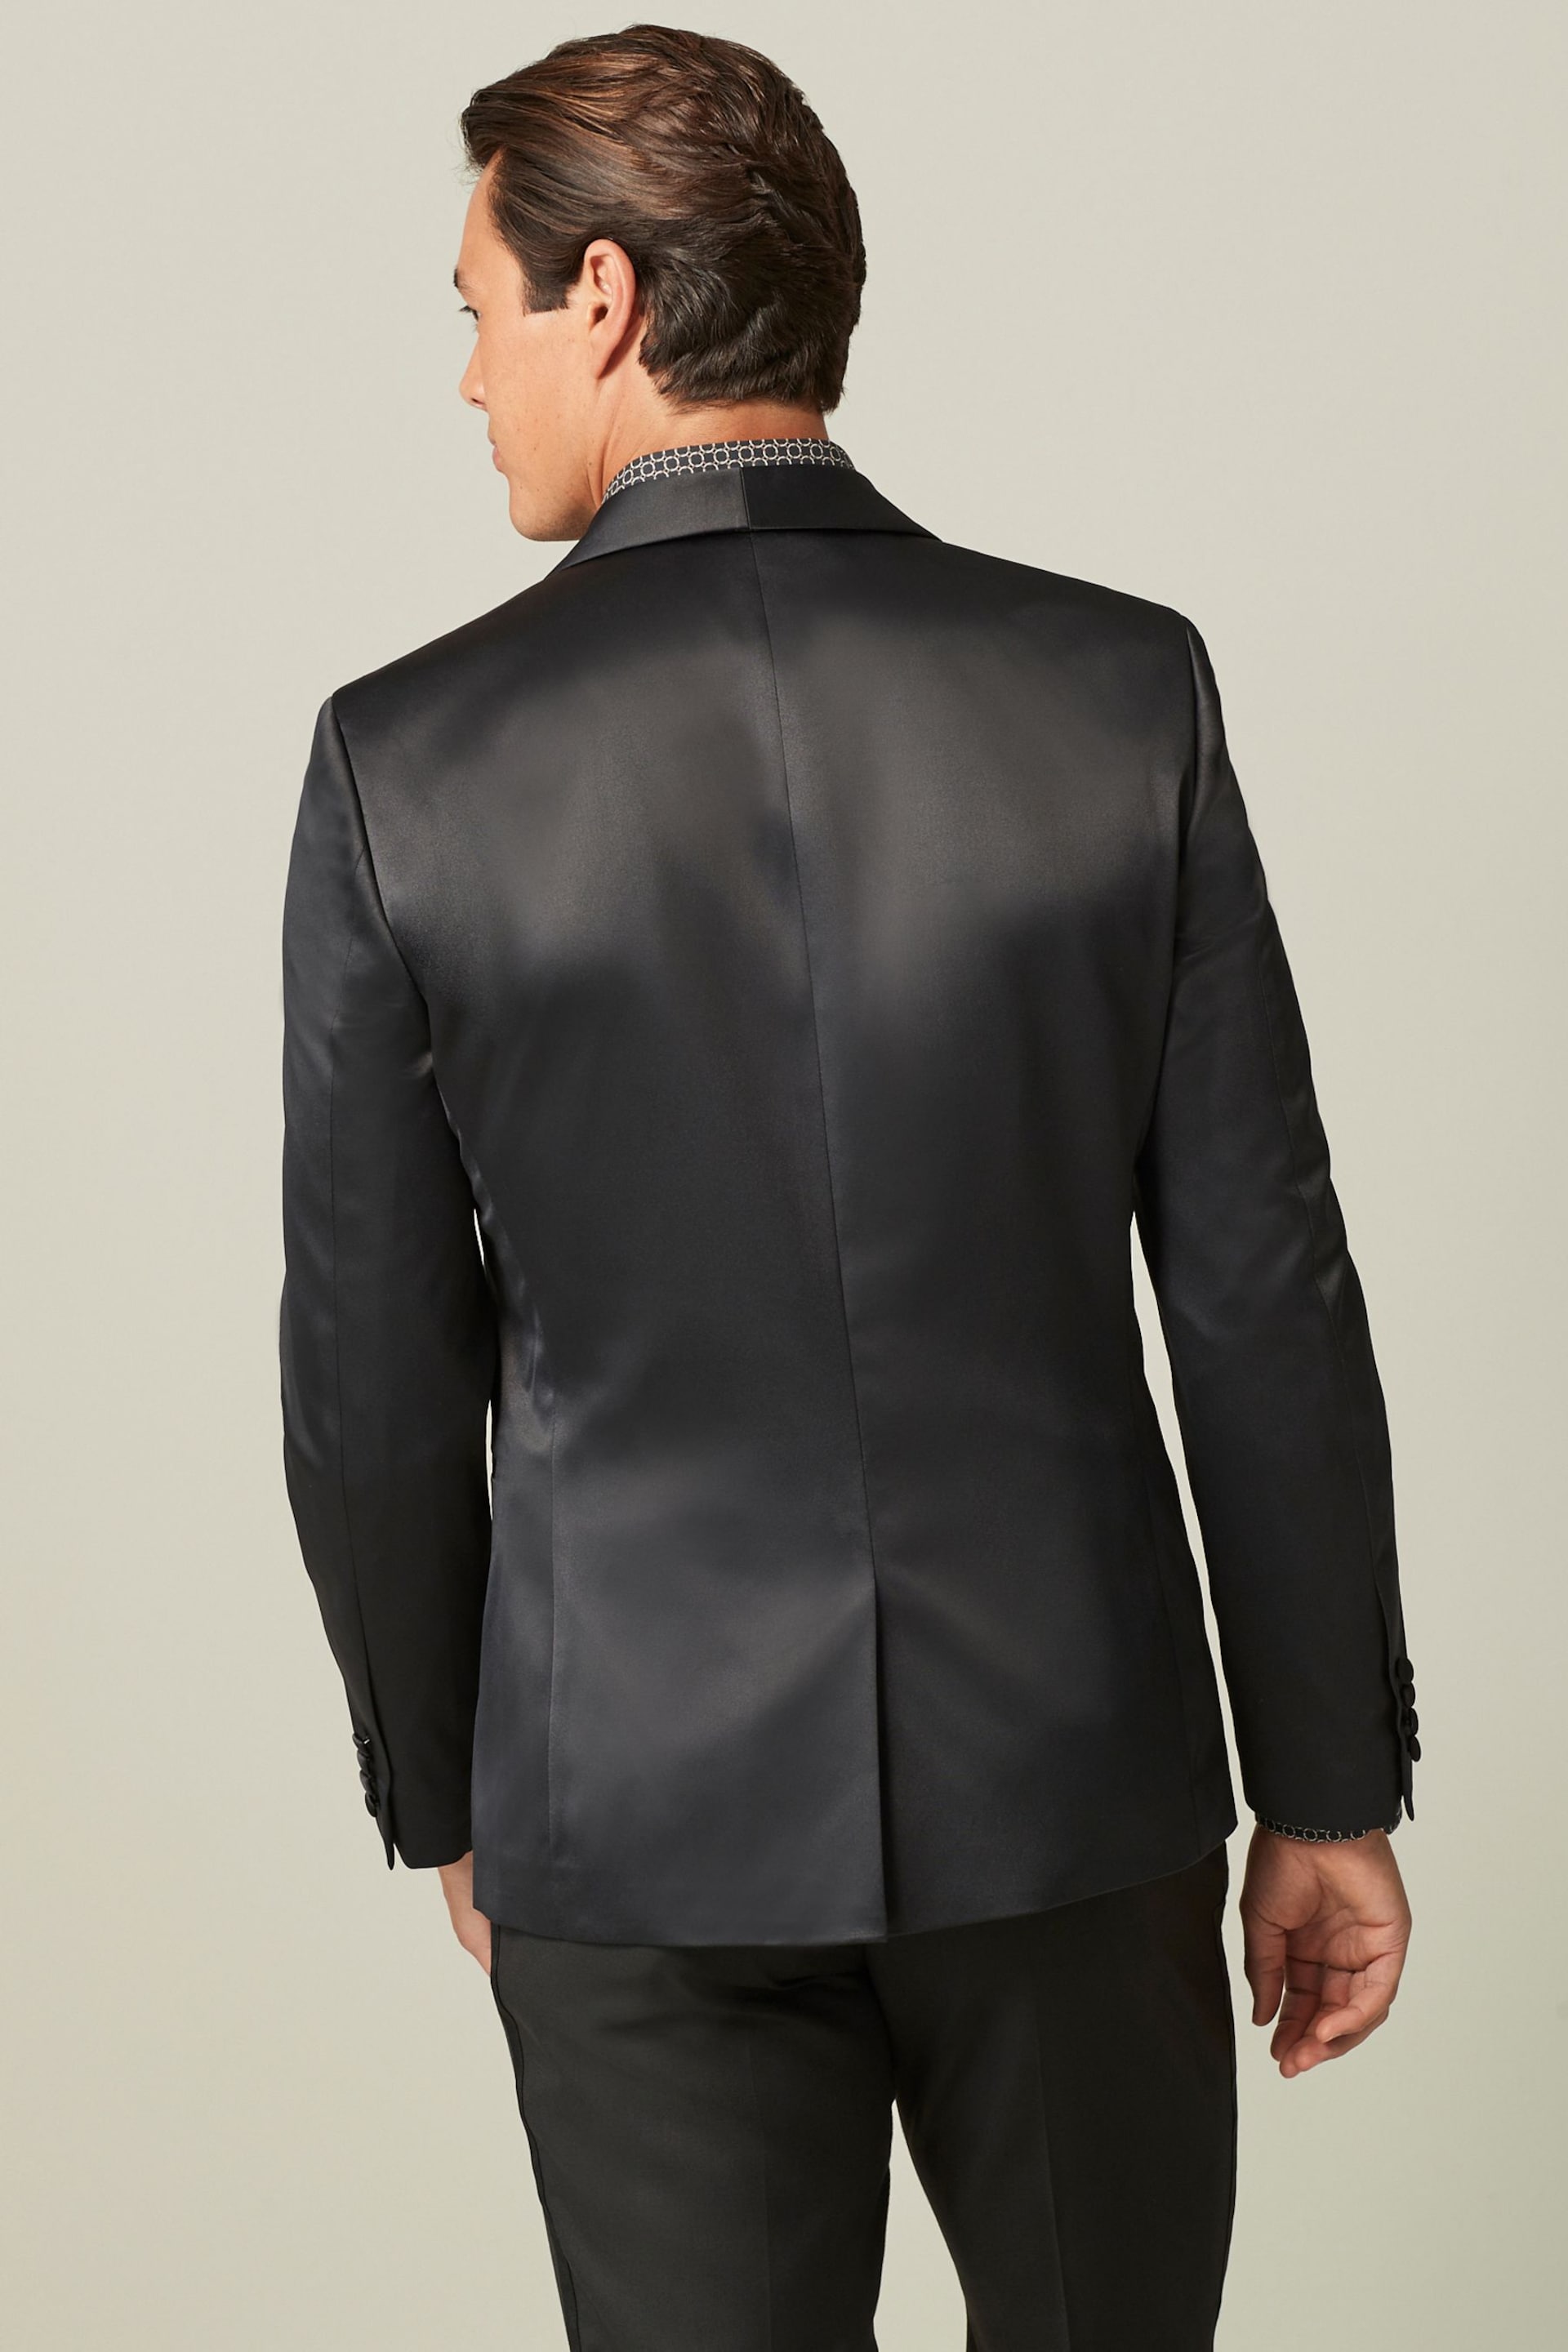 Black Satin Tuxedo Jacket - Image 3 of 10